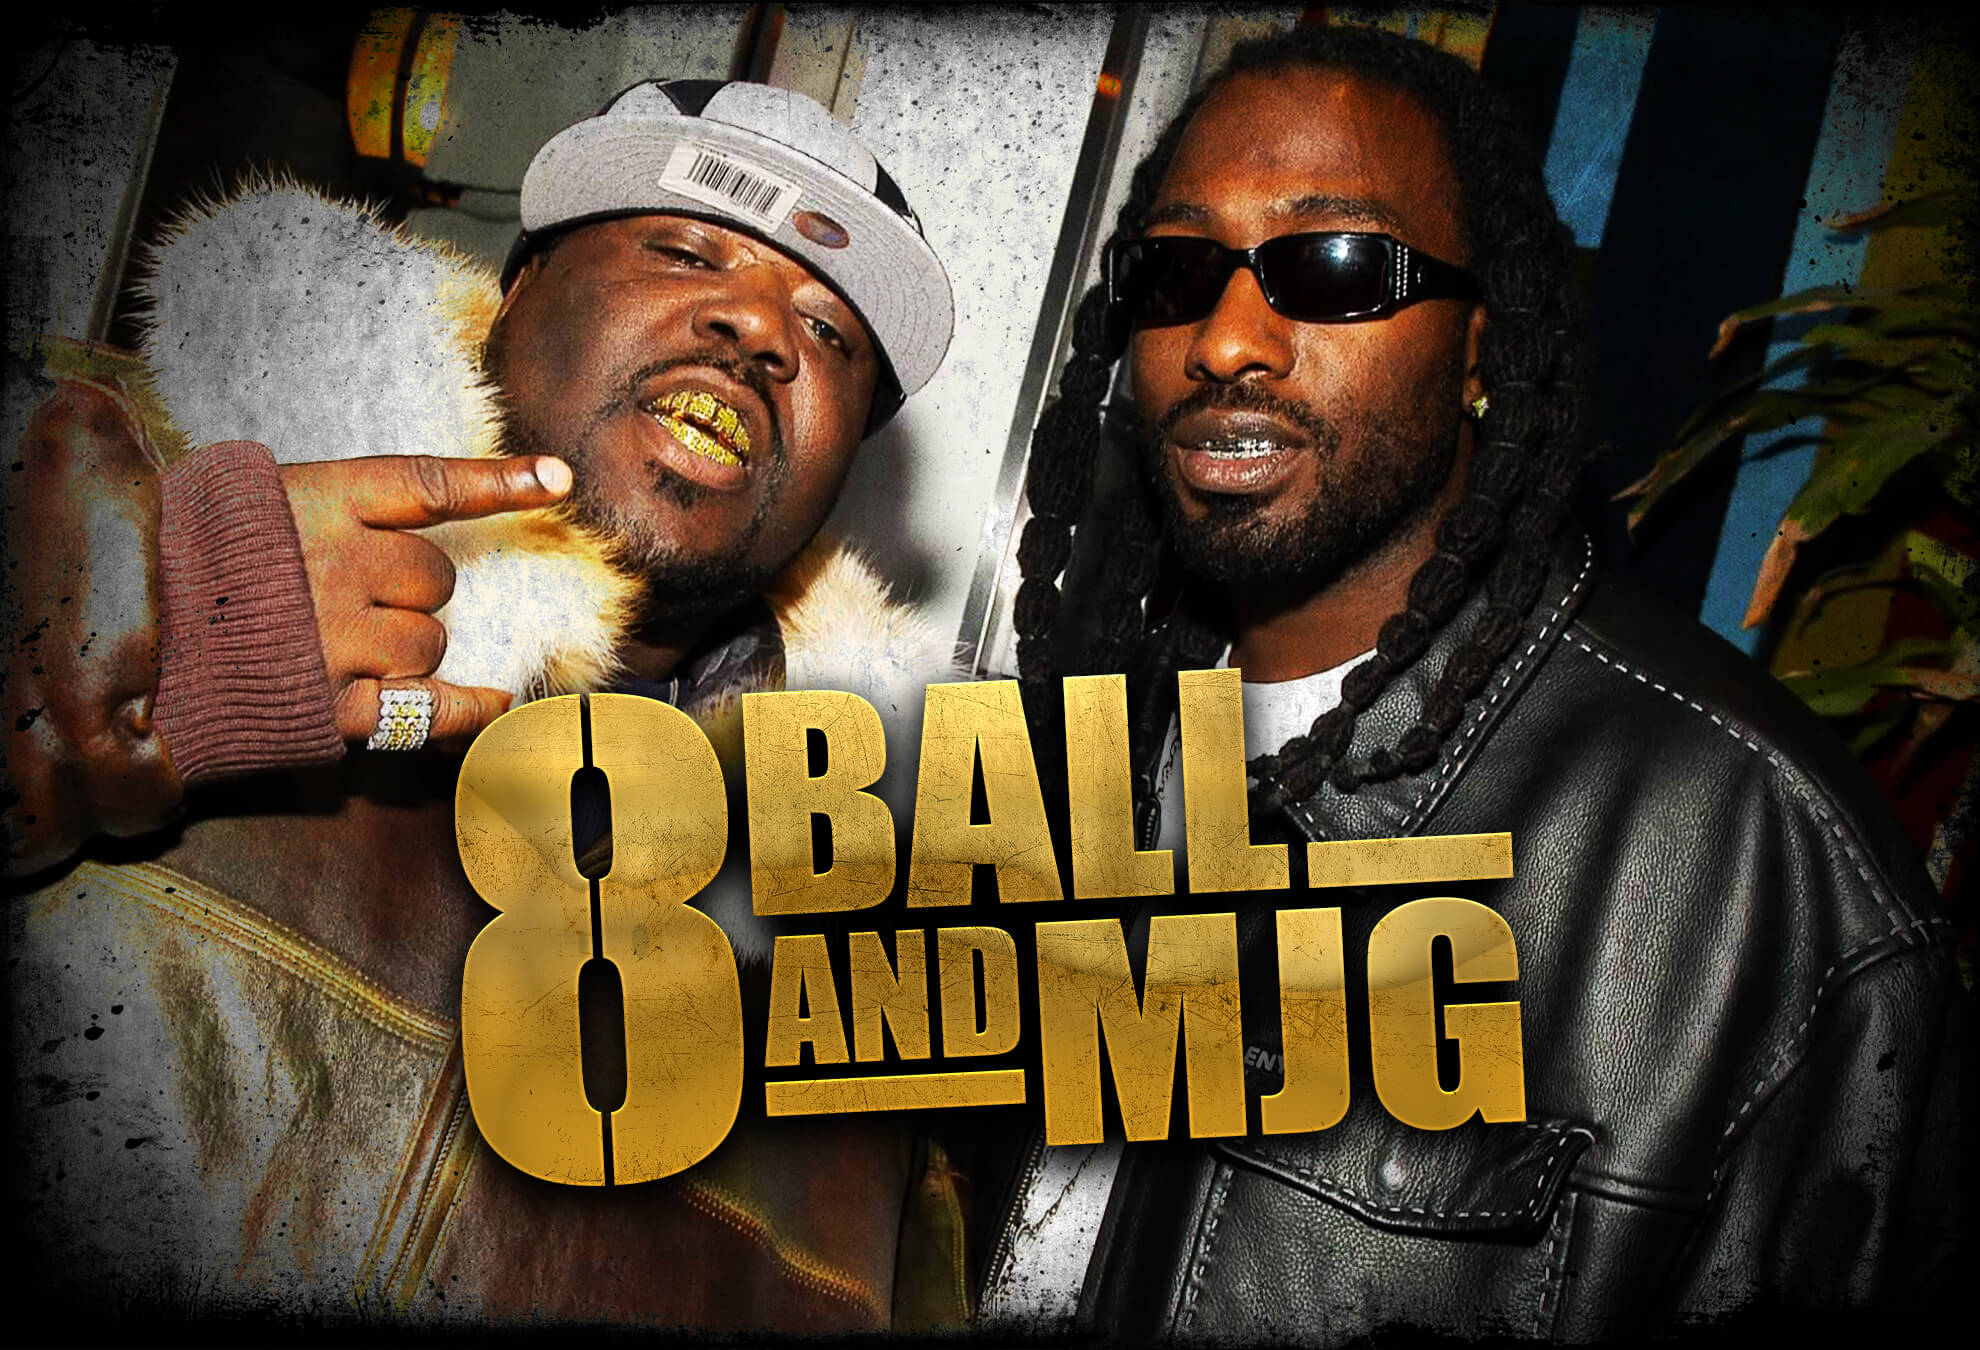 8 Ball & MJG